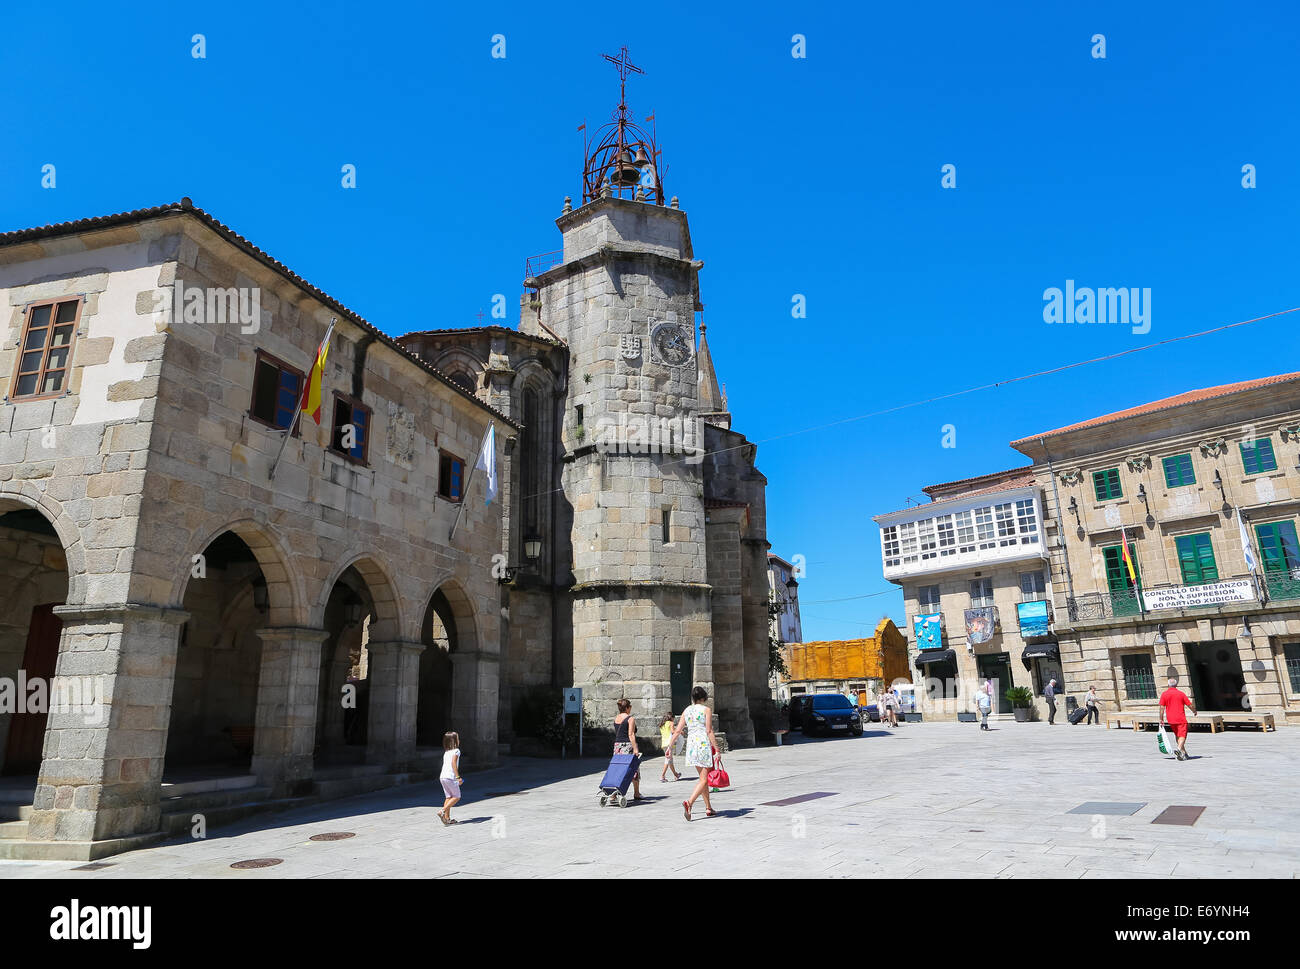 BETANZOS, Spagna - 30 luglio 2014: Igrexa de Santiago o la chiesa di San Giacomo nella storica città di Betanzos, Galizia, Spagna.Questo Foto Stock